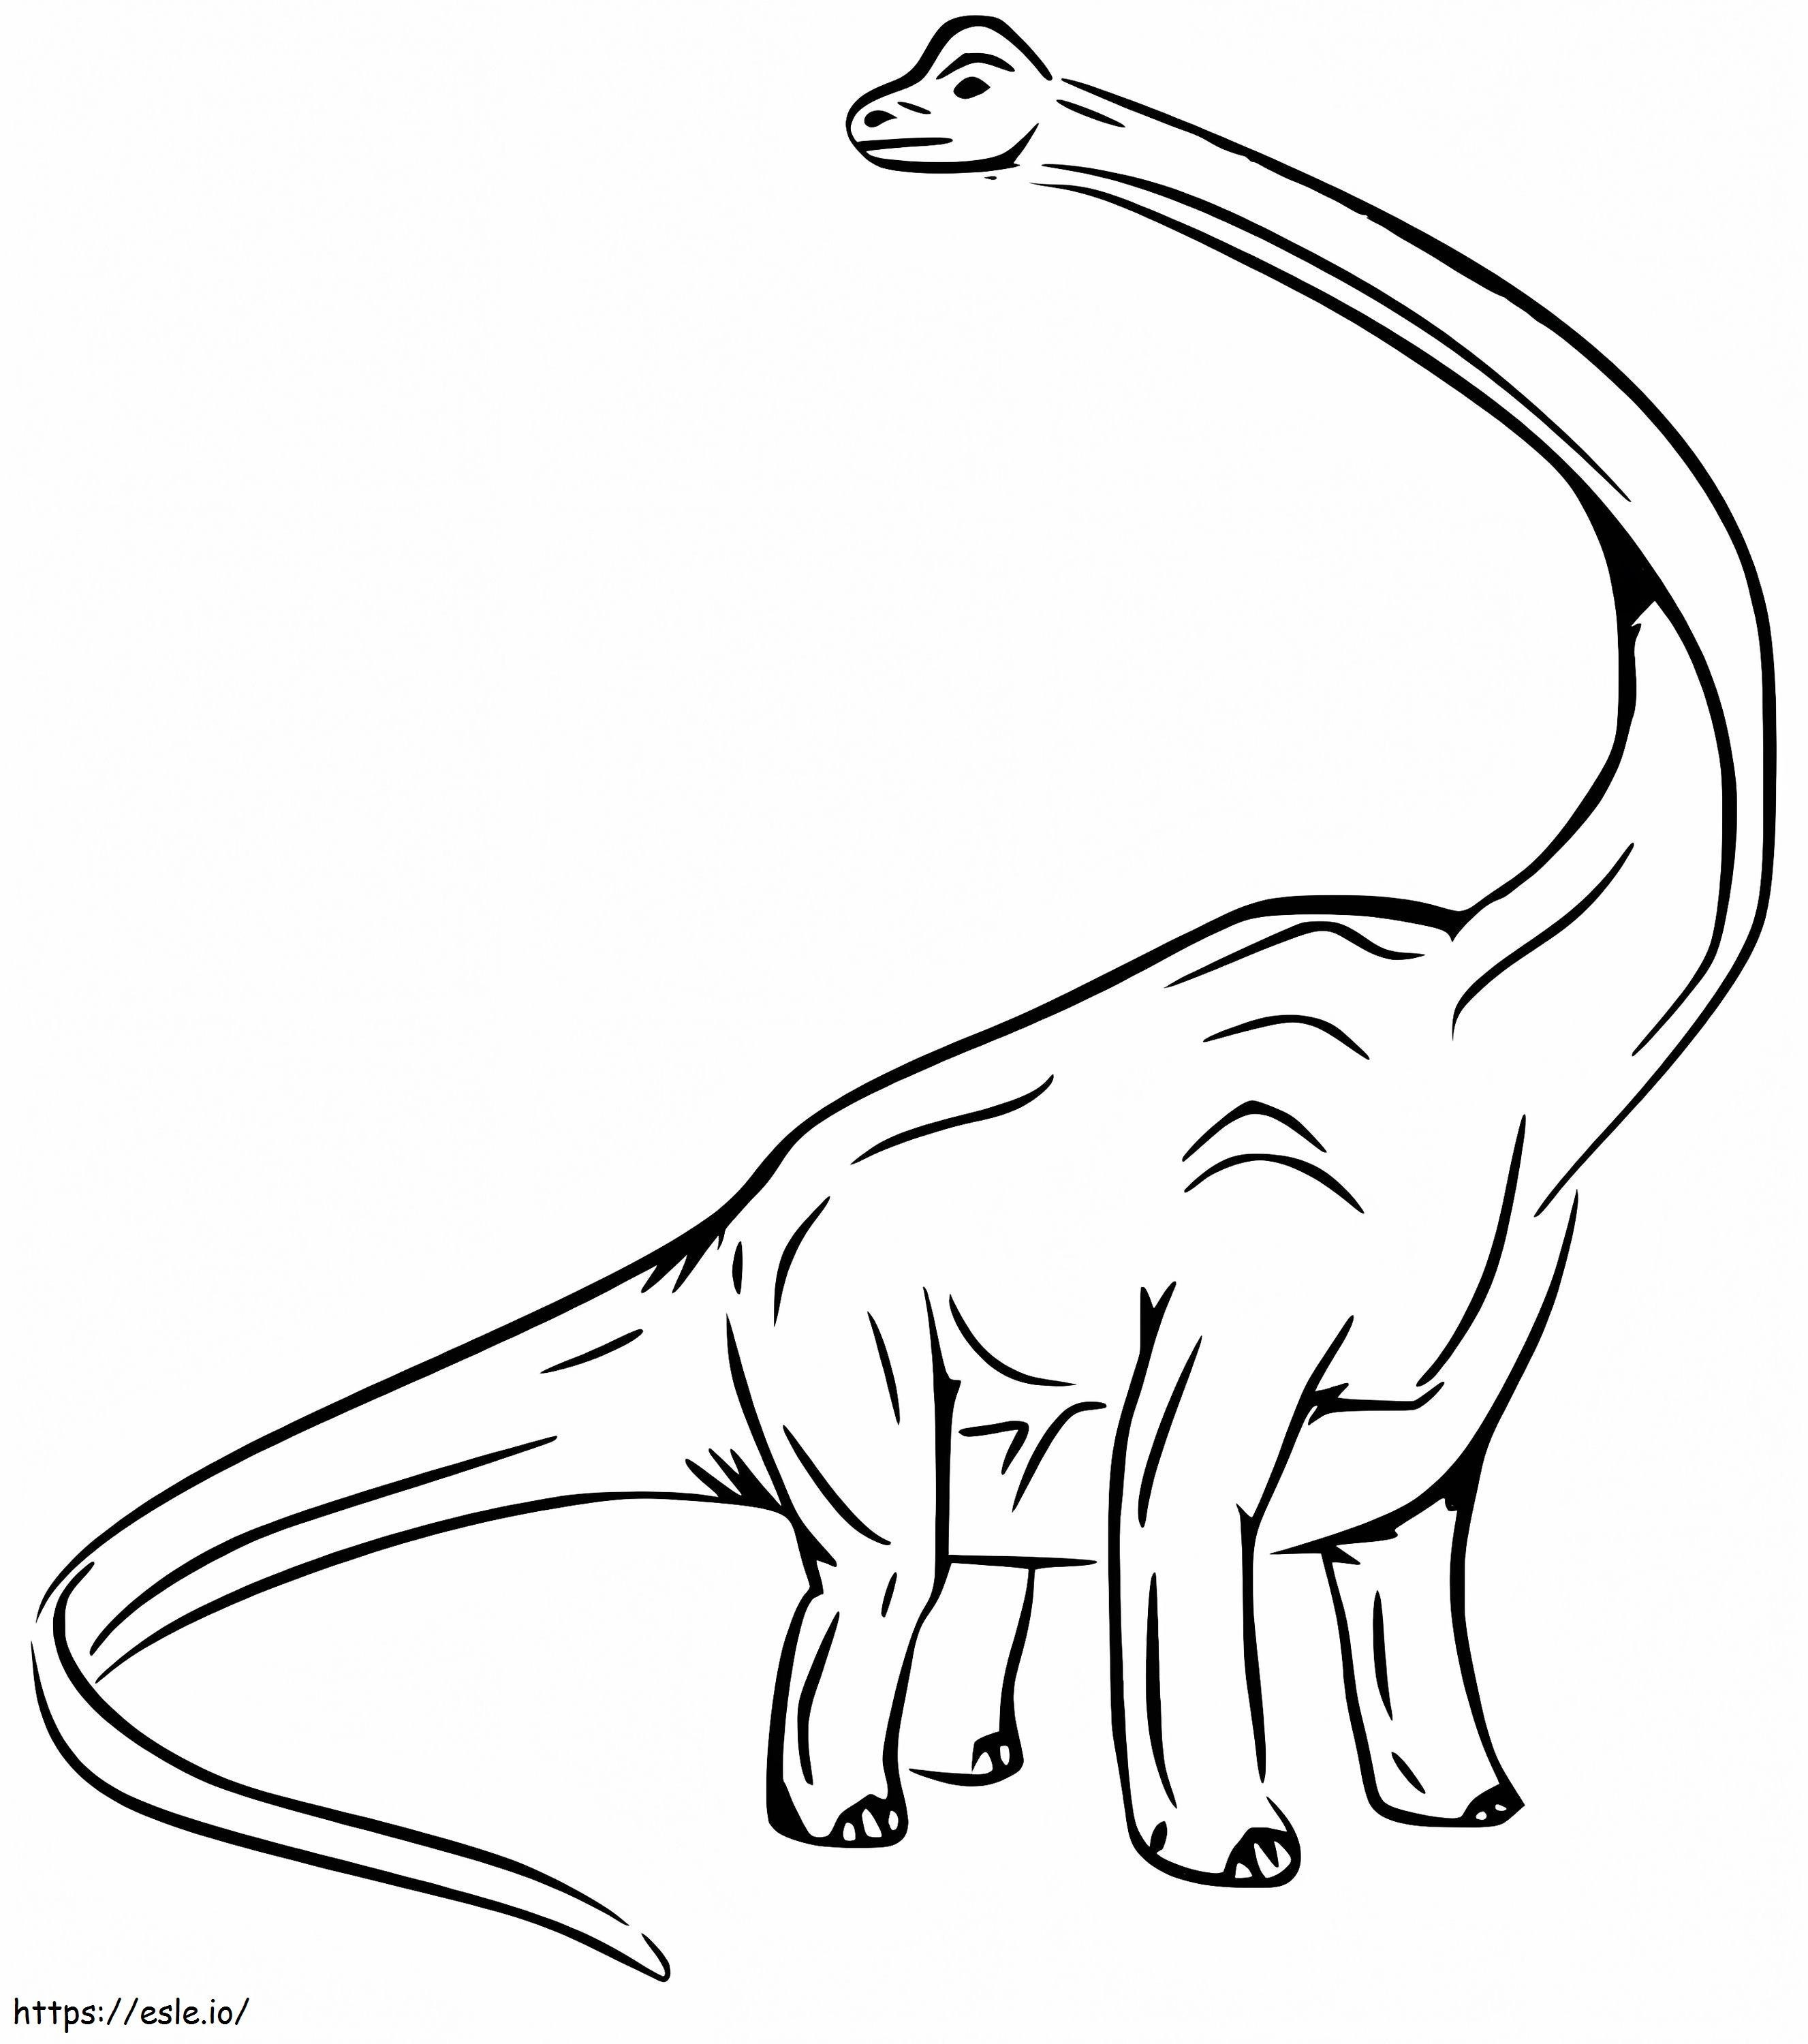 Enorme brachiosaurus kleurplaat kleurplaat